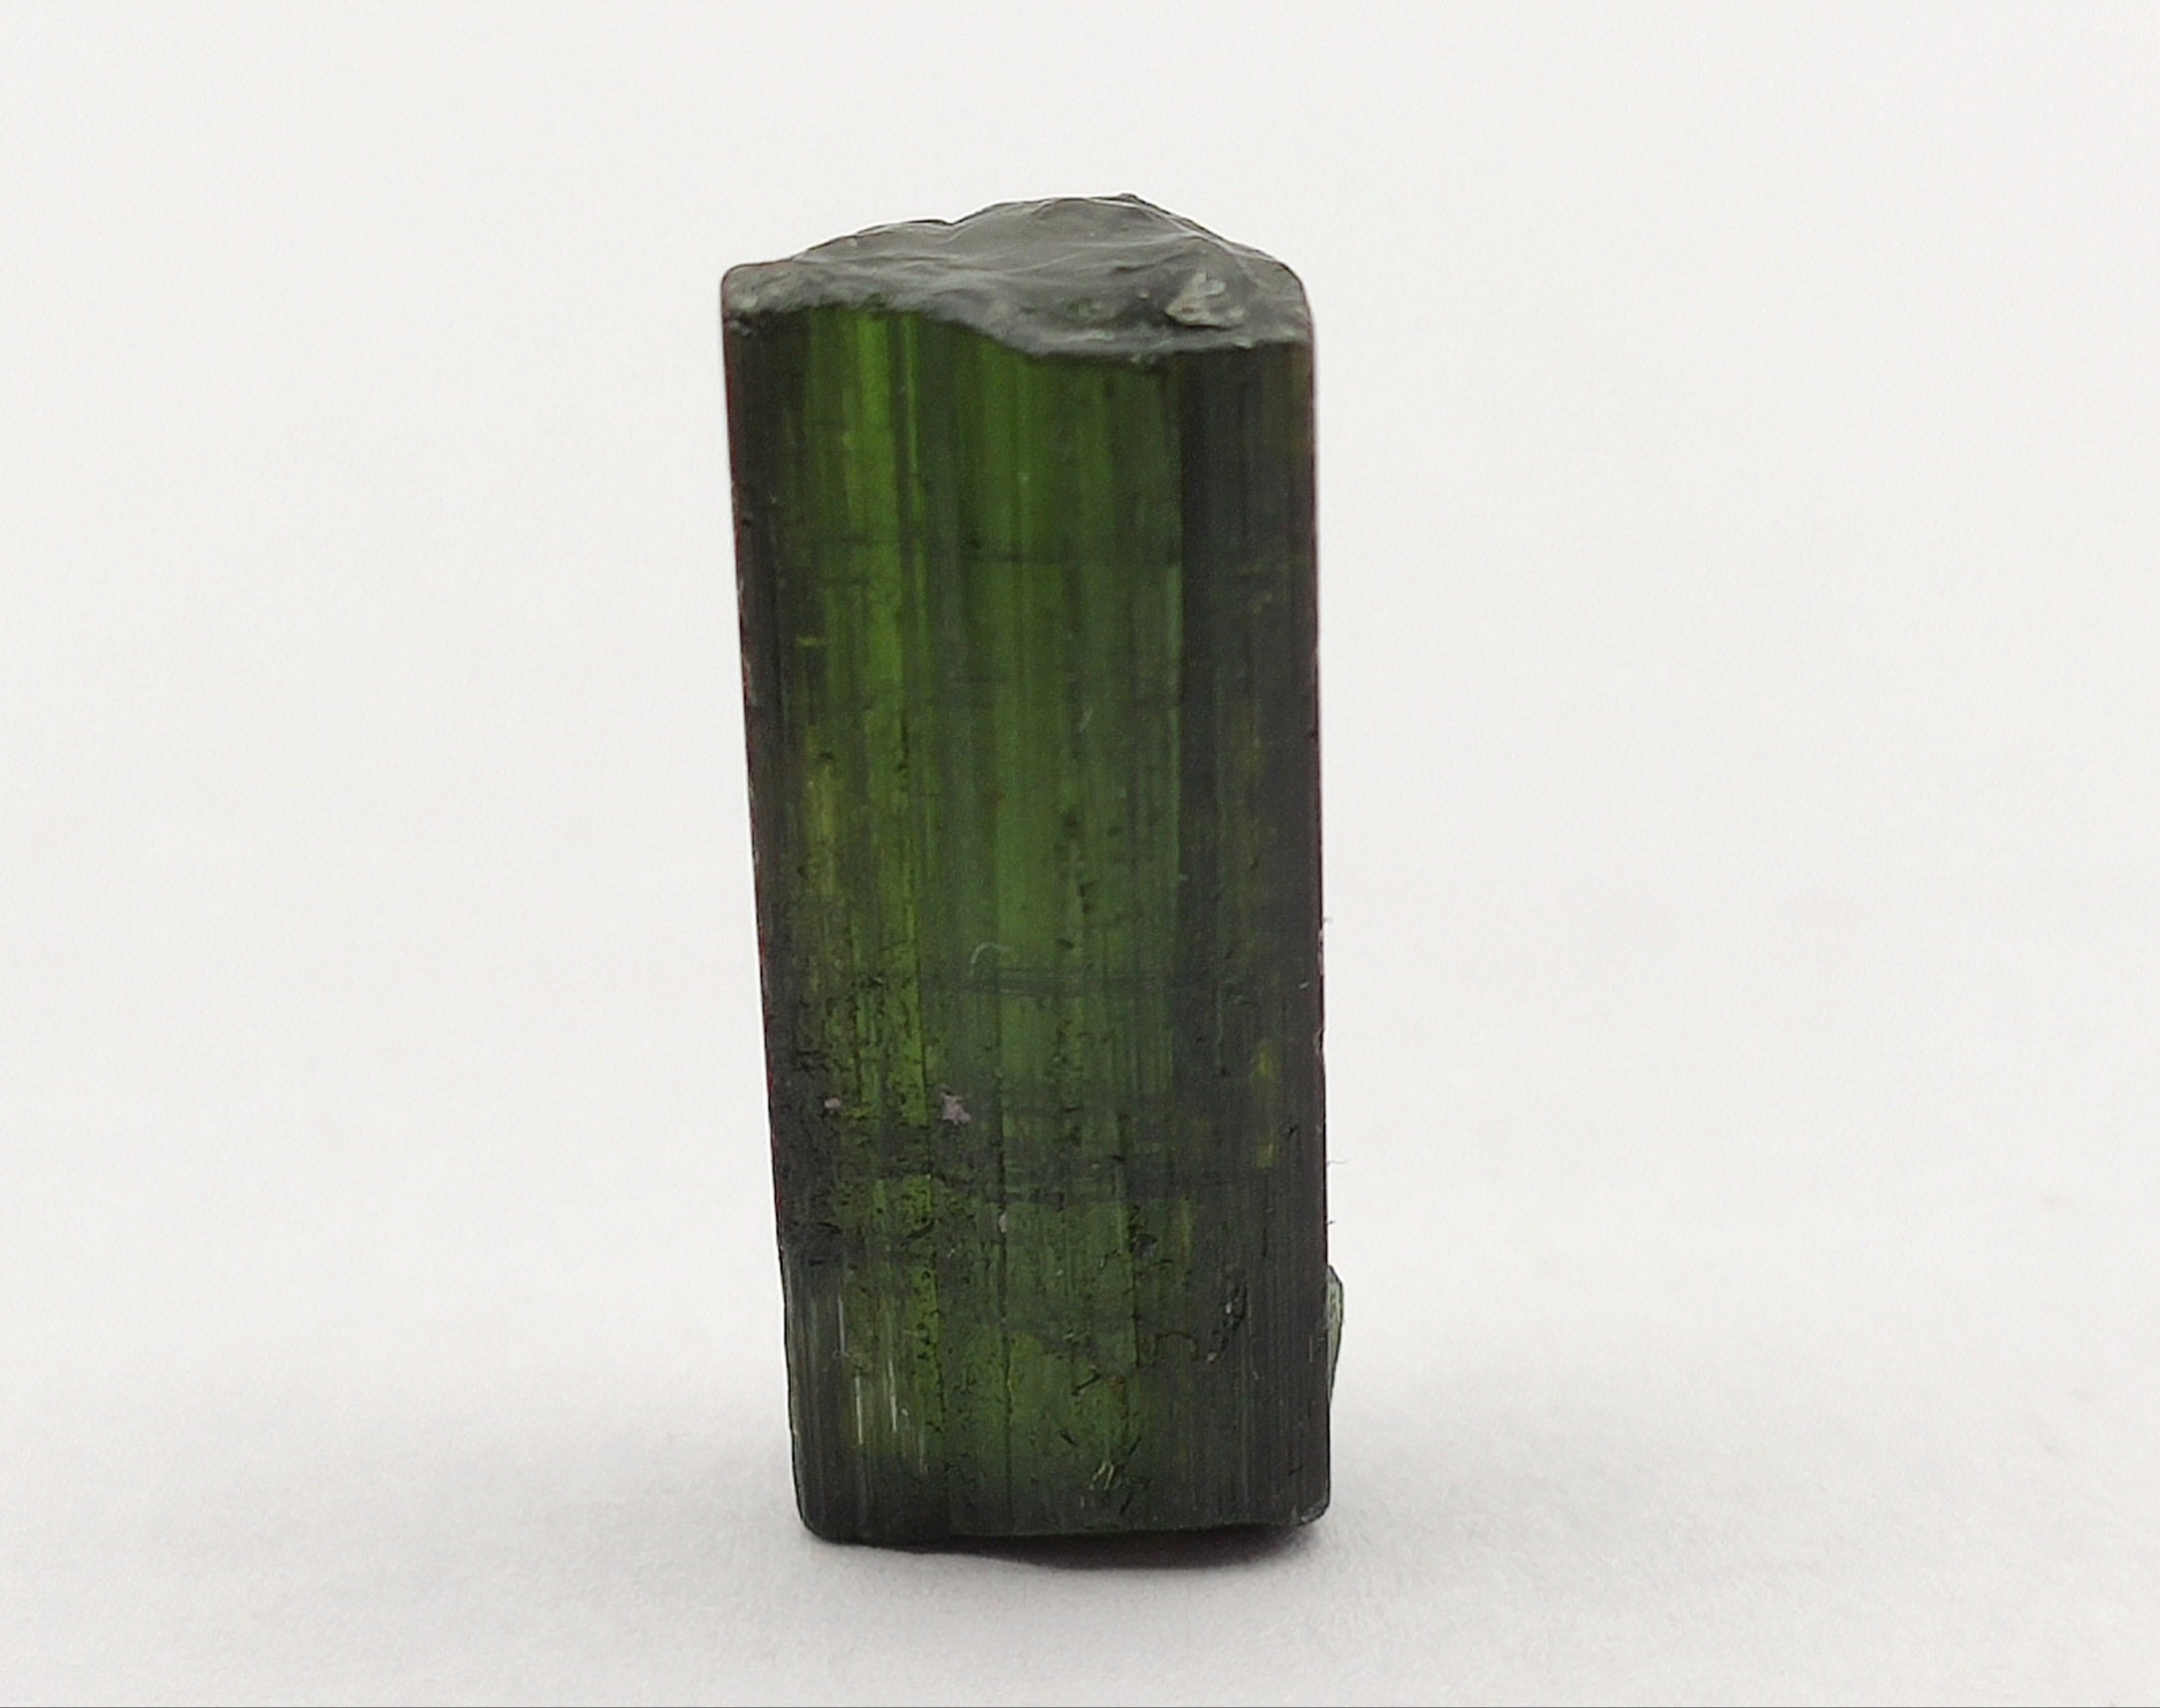 Self Adhesive Rhinestones - Dark Green (KaiserCraft 387534)